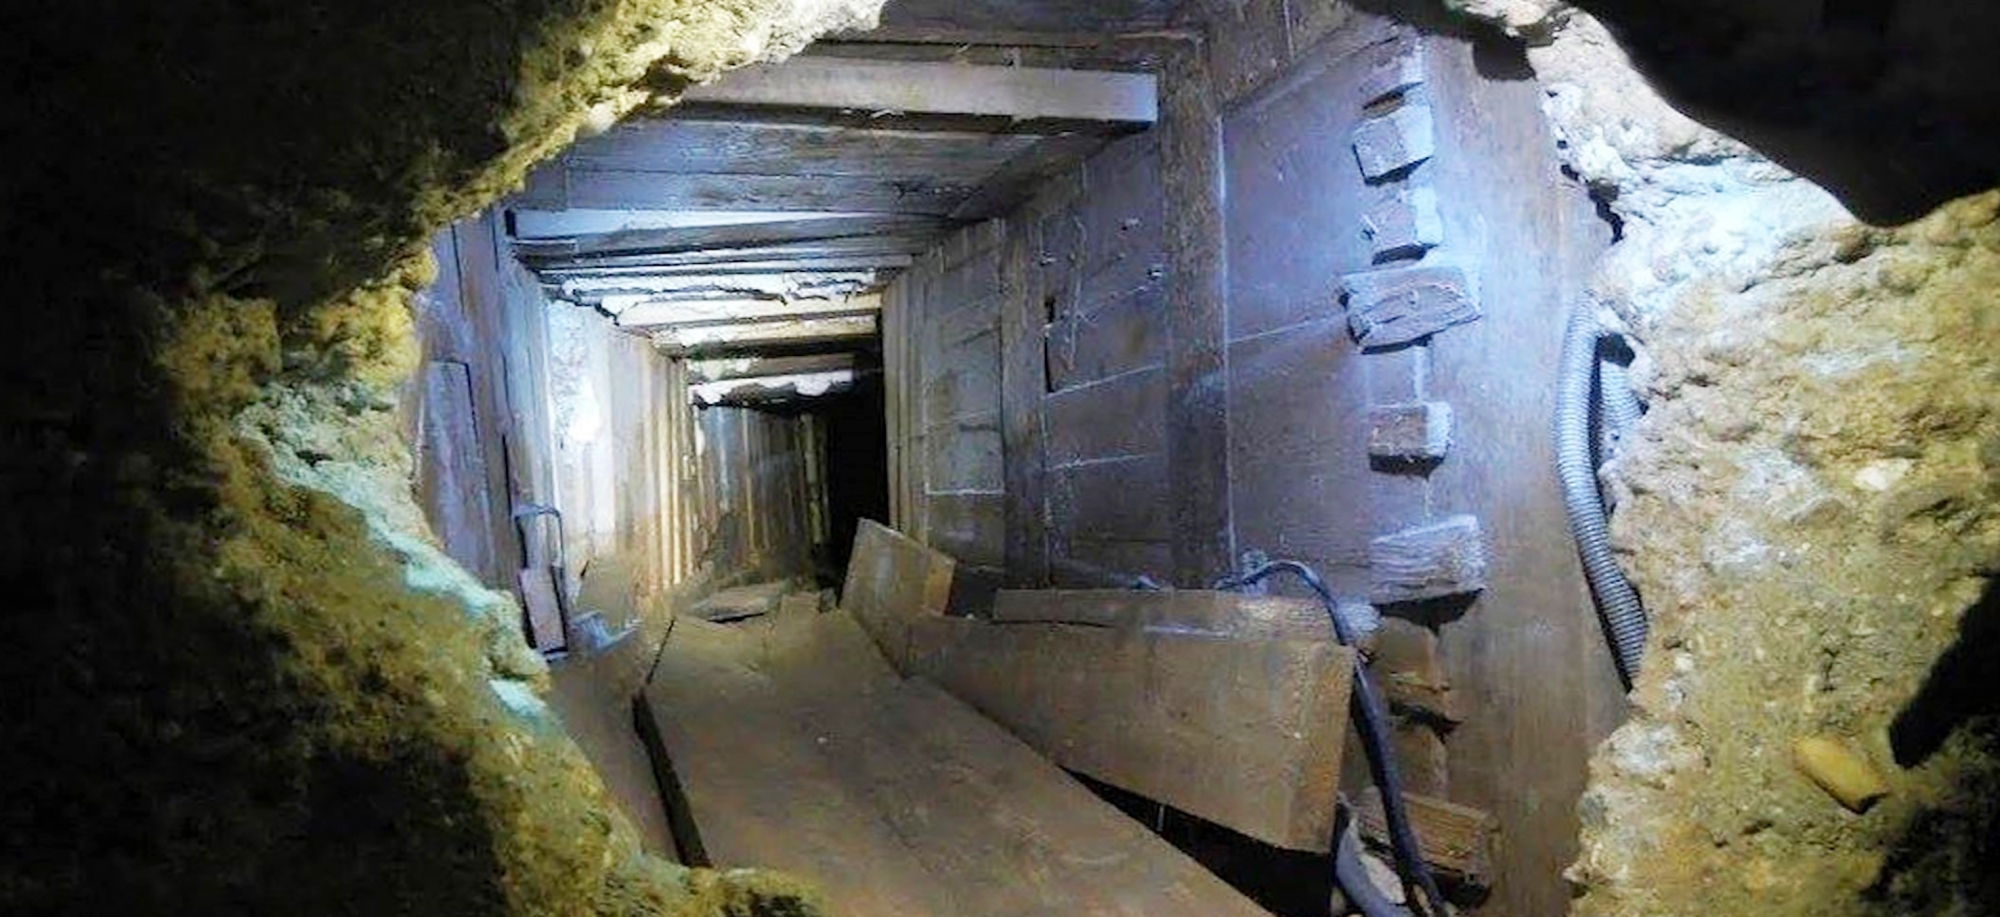 Le gang français avait creusé un tunnel de 30 mètres pendant des mois à Toulouse. En Valais, il ne lui faudra que quelques heures pour vider la villa d'Ardon.